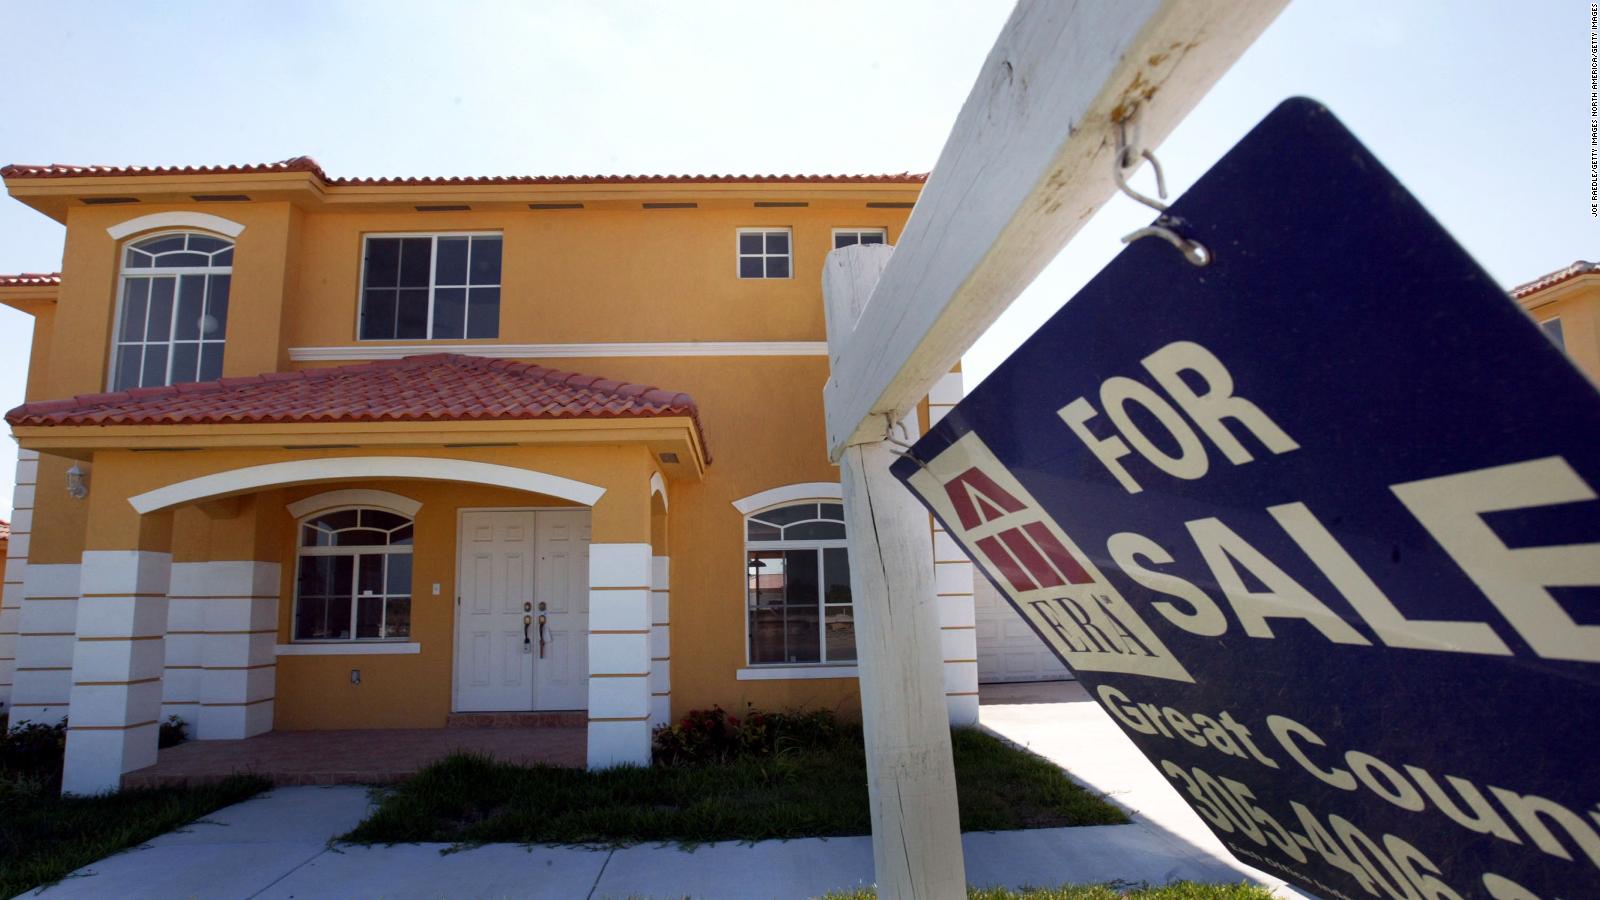 Comprar una casa es cada vez más caro: los precios se han vuelto a disparar |  Video